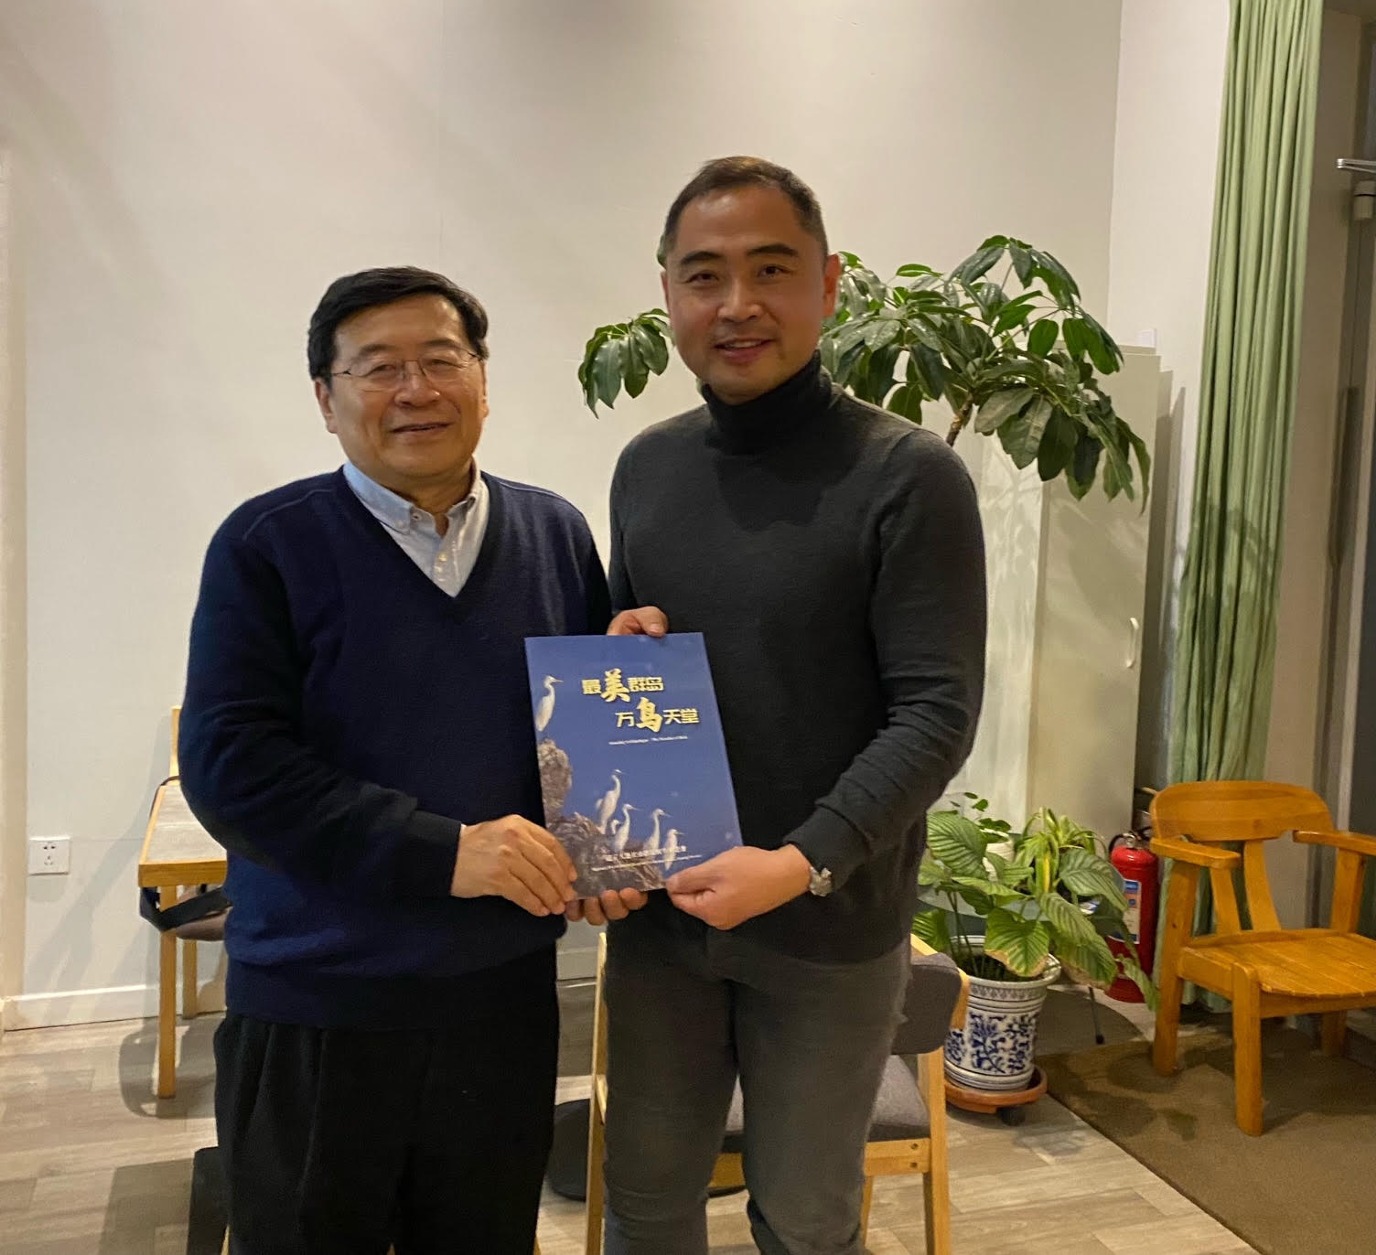 Wanli Zheng with prof. Zhengwang Zhang